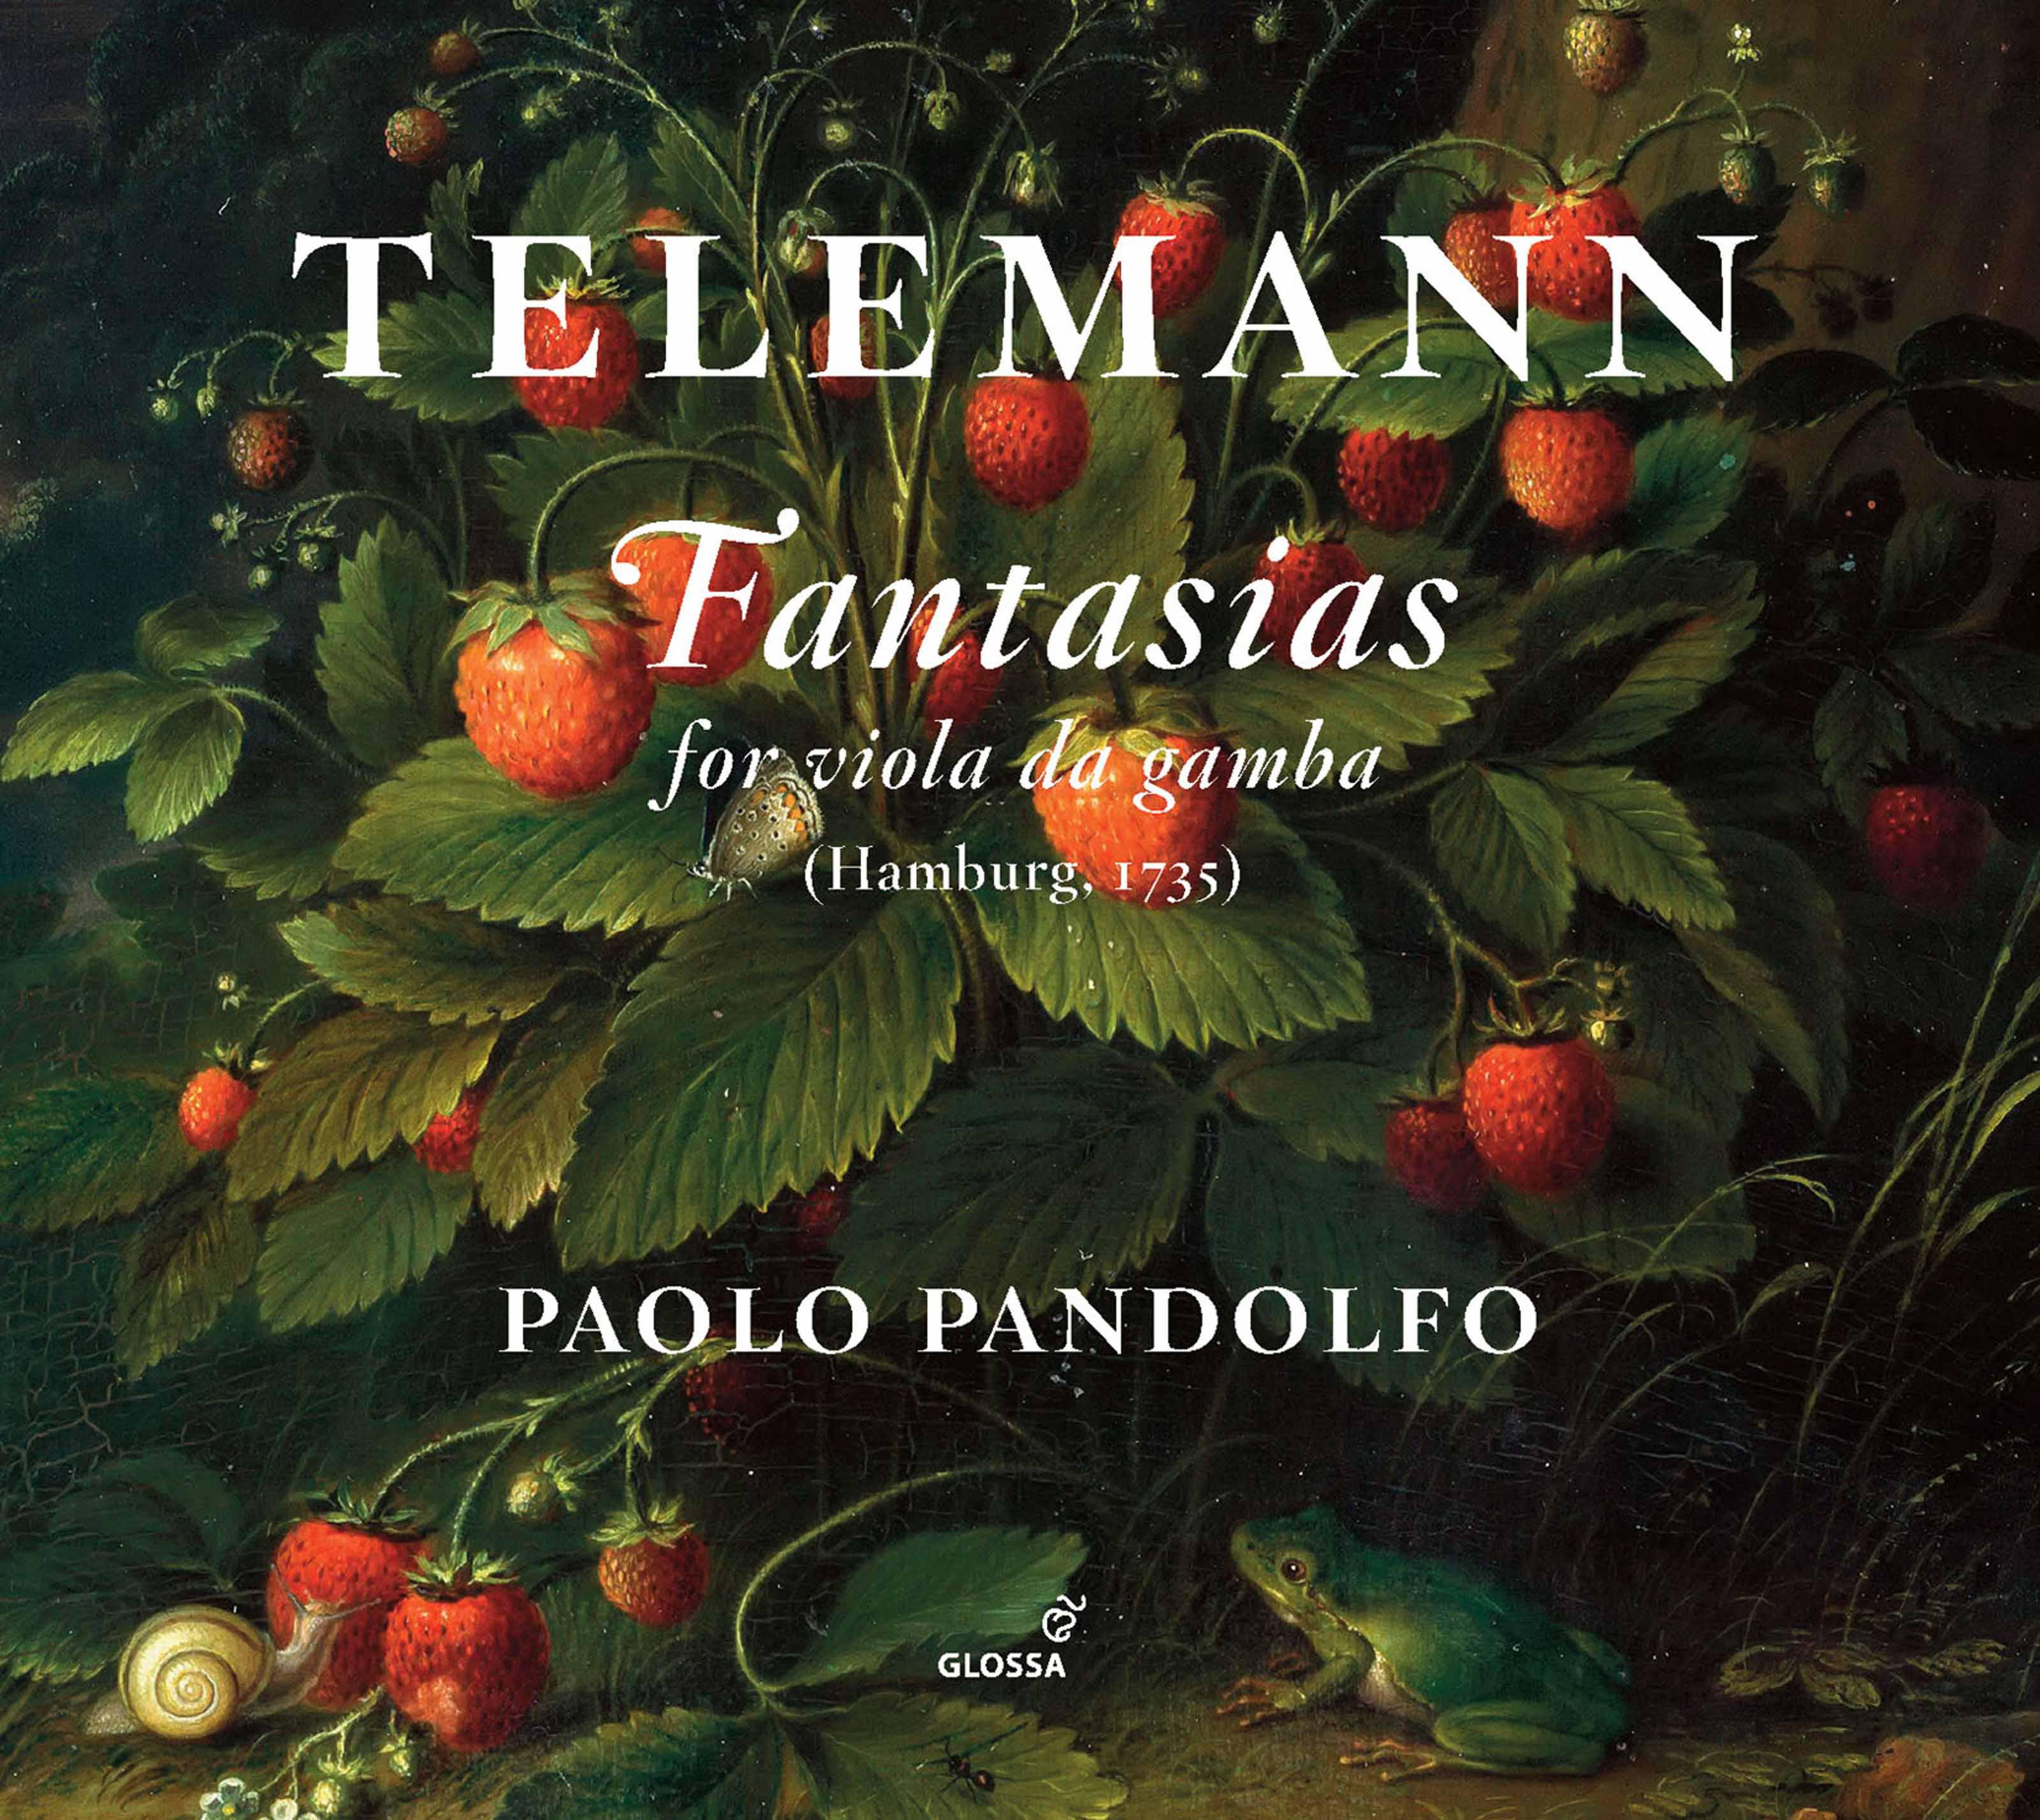 Paolo Pandolfo - Fantasia in E Minor, TWV 40:28: I. Largo